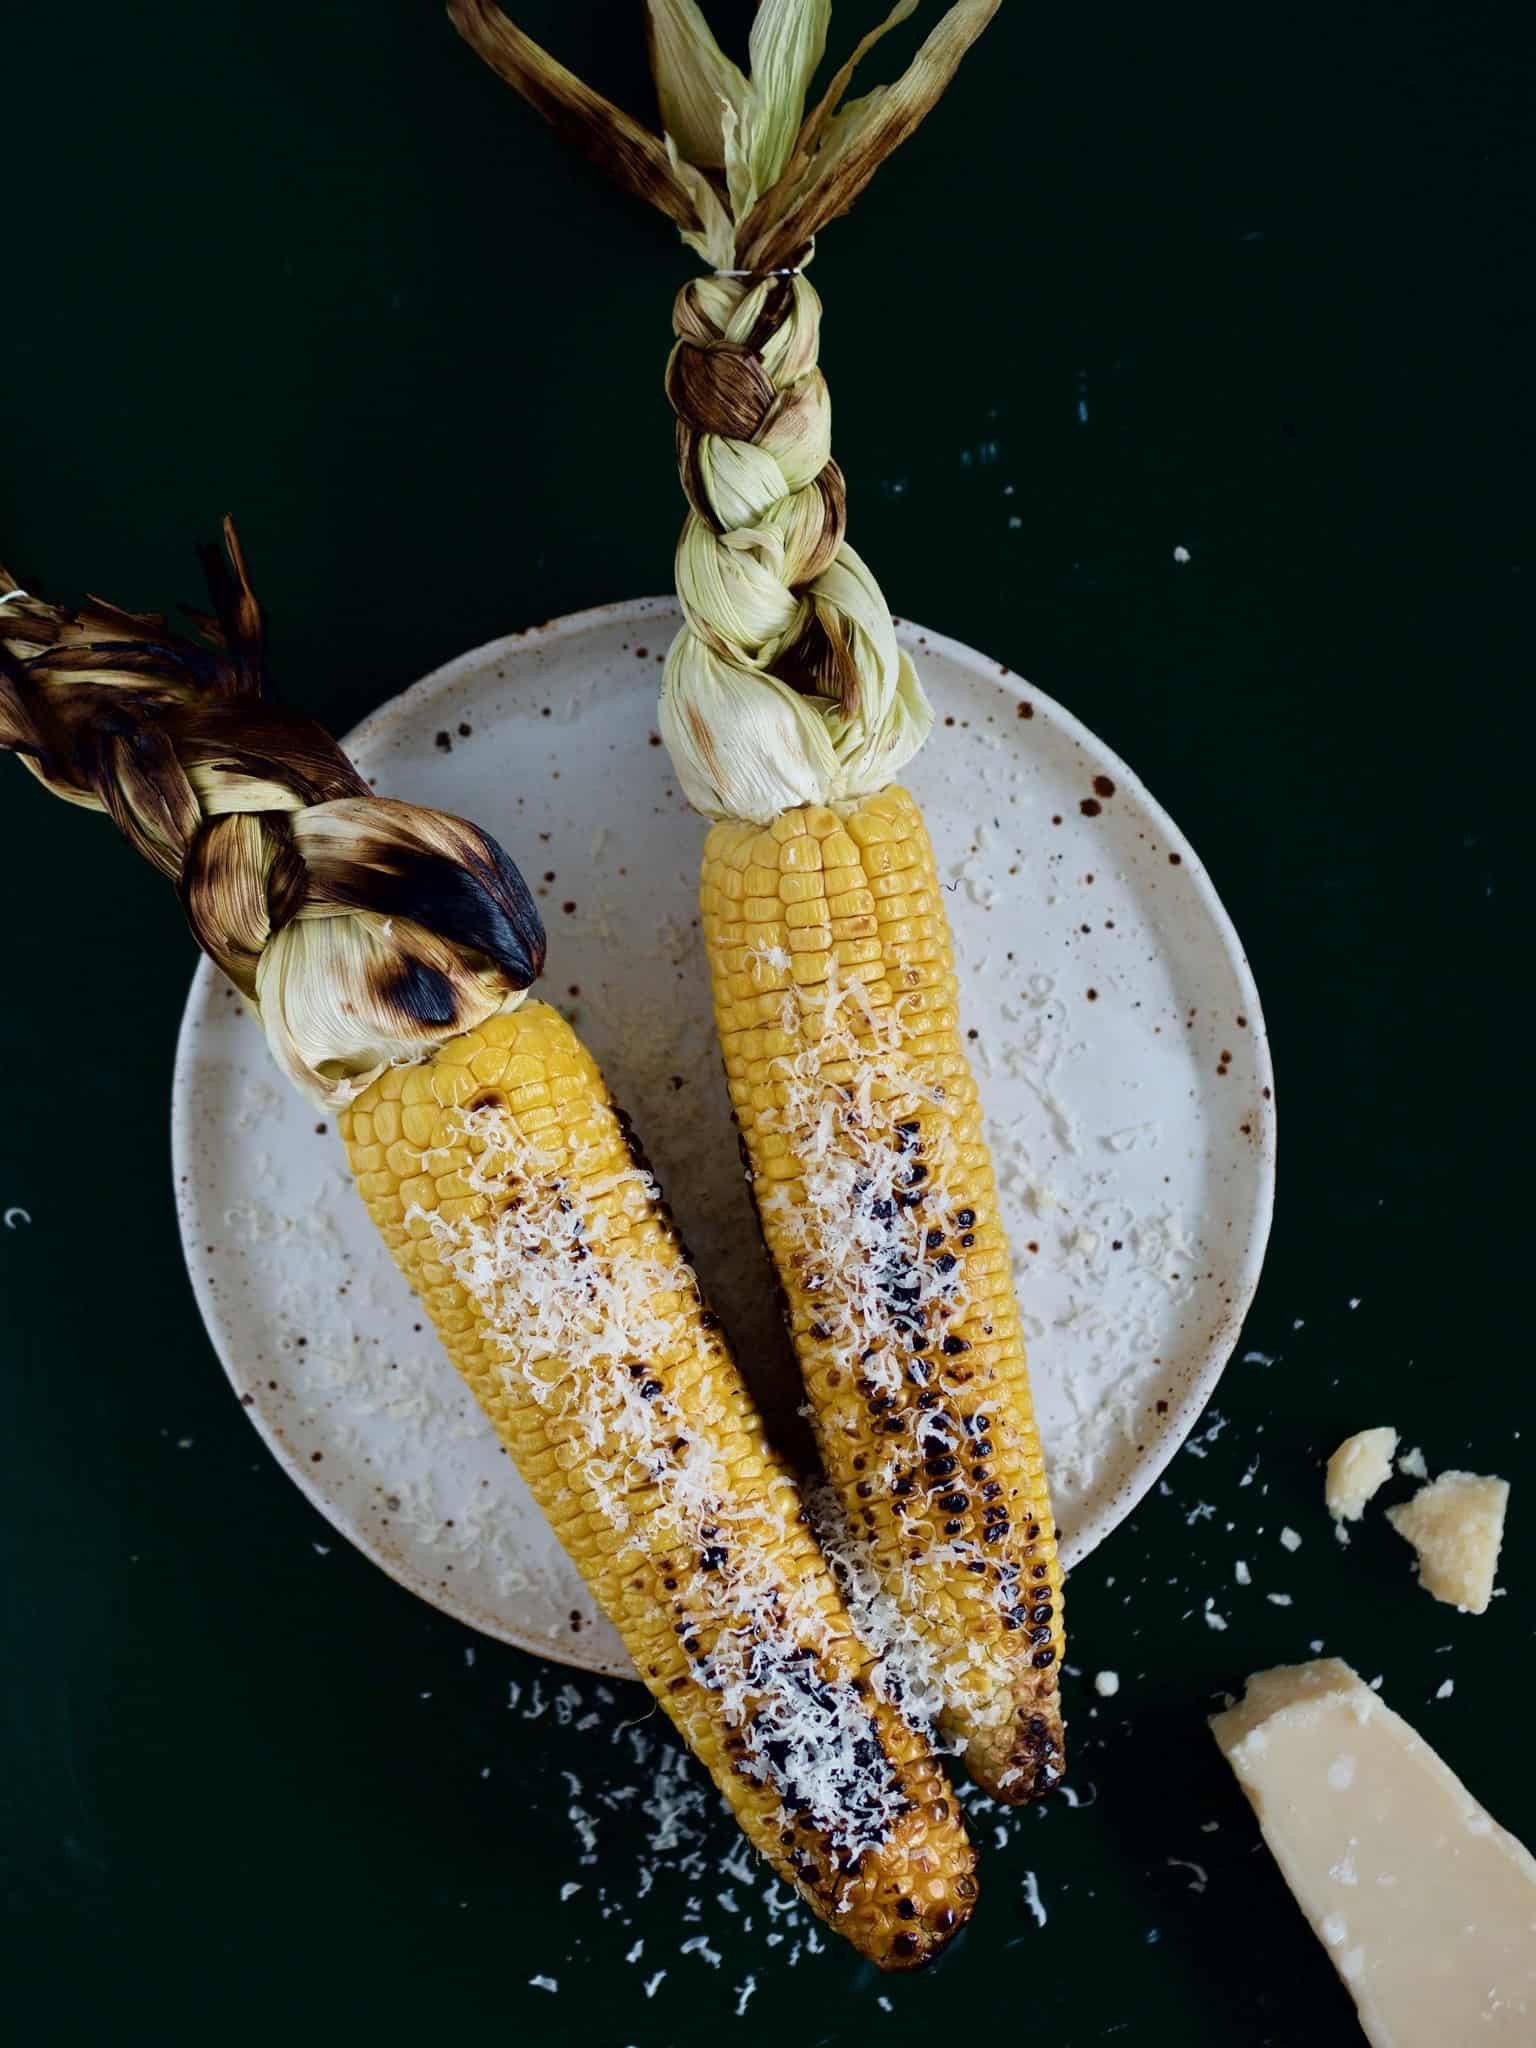 Grillede majskolber - en simpel opskrift på majs